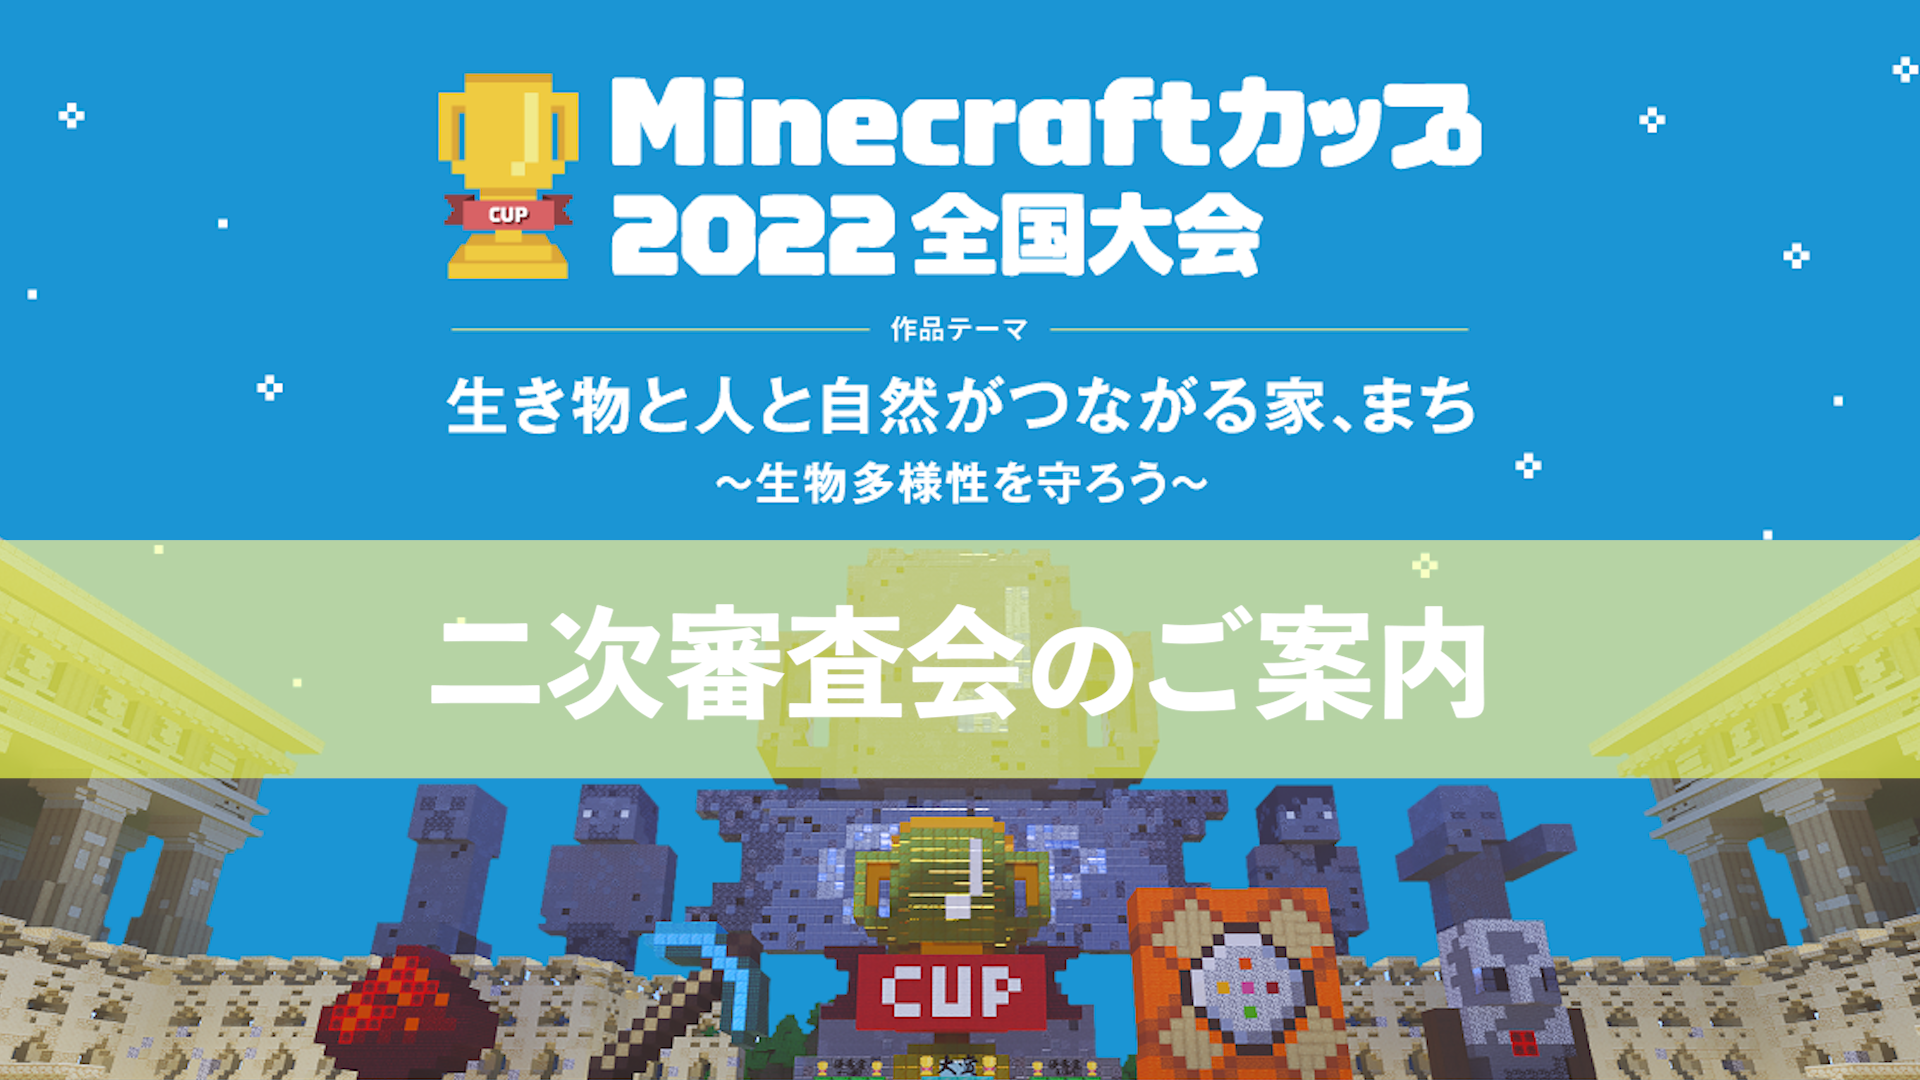 教育版マインクラフトを使った作品コンテスト Minecraftカップ22全国大会 全国426作品の中から二次審査会 地区ブロック大会 へ進む1作品が決定 Minecraftカップ全国大会運営委員会のプレスリリース